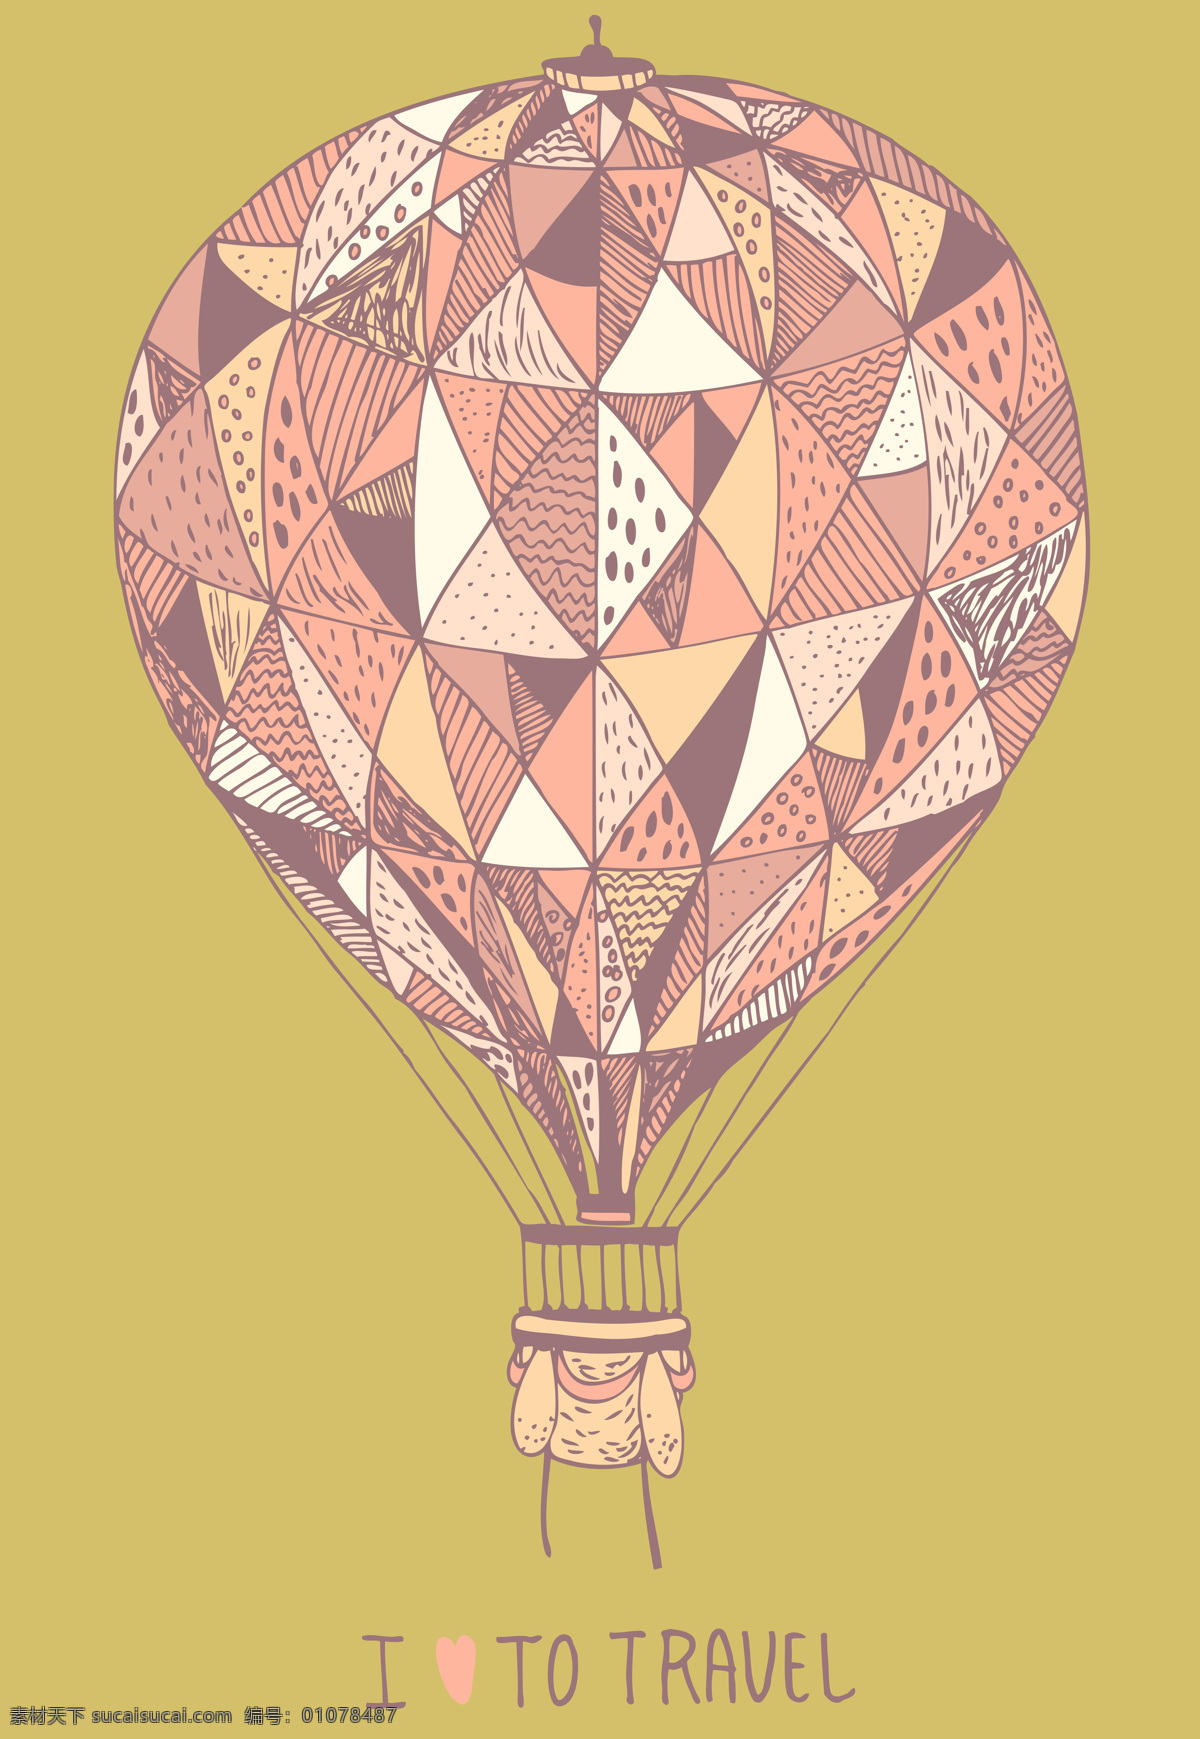 现代 简约 抽象 热气球 装饰画 北欧 风格 现代简约 抽象热气球 北欧风格